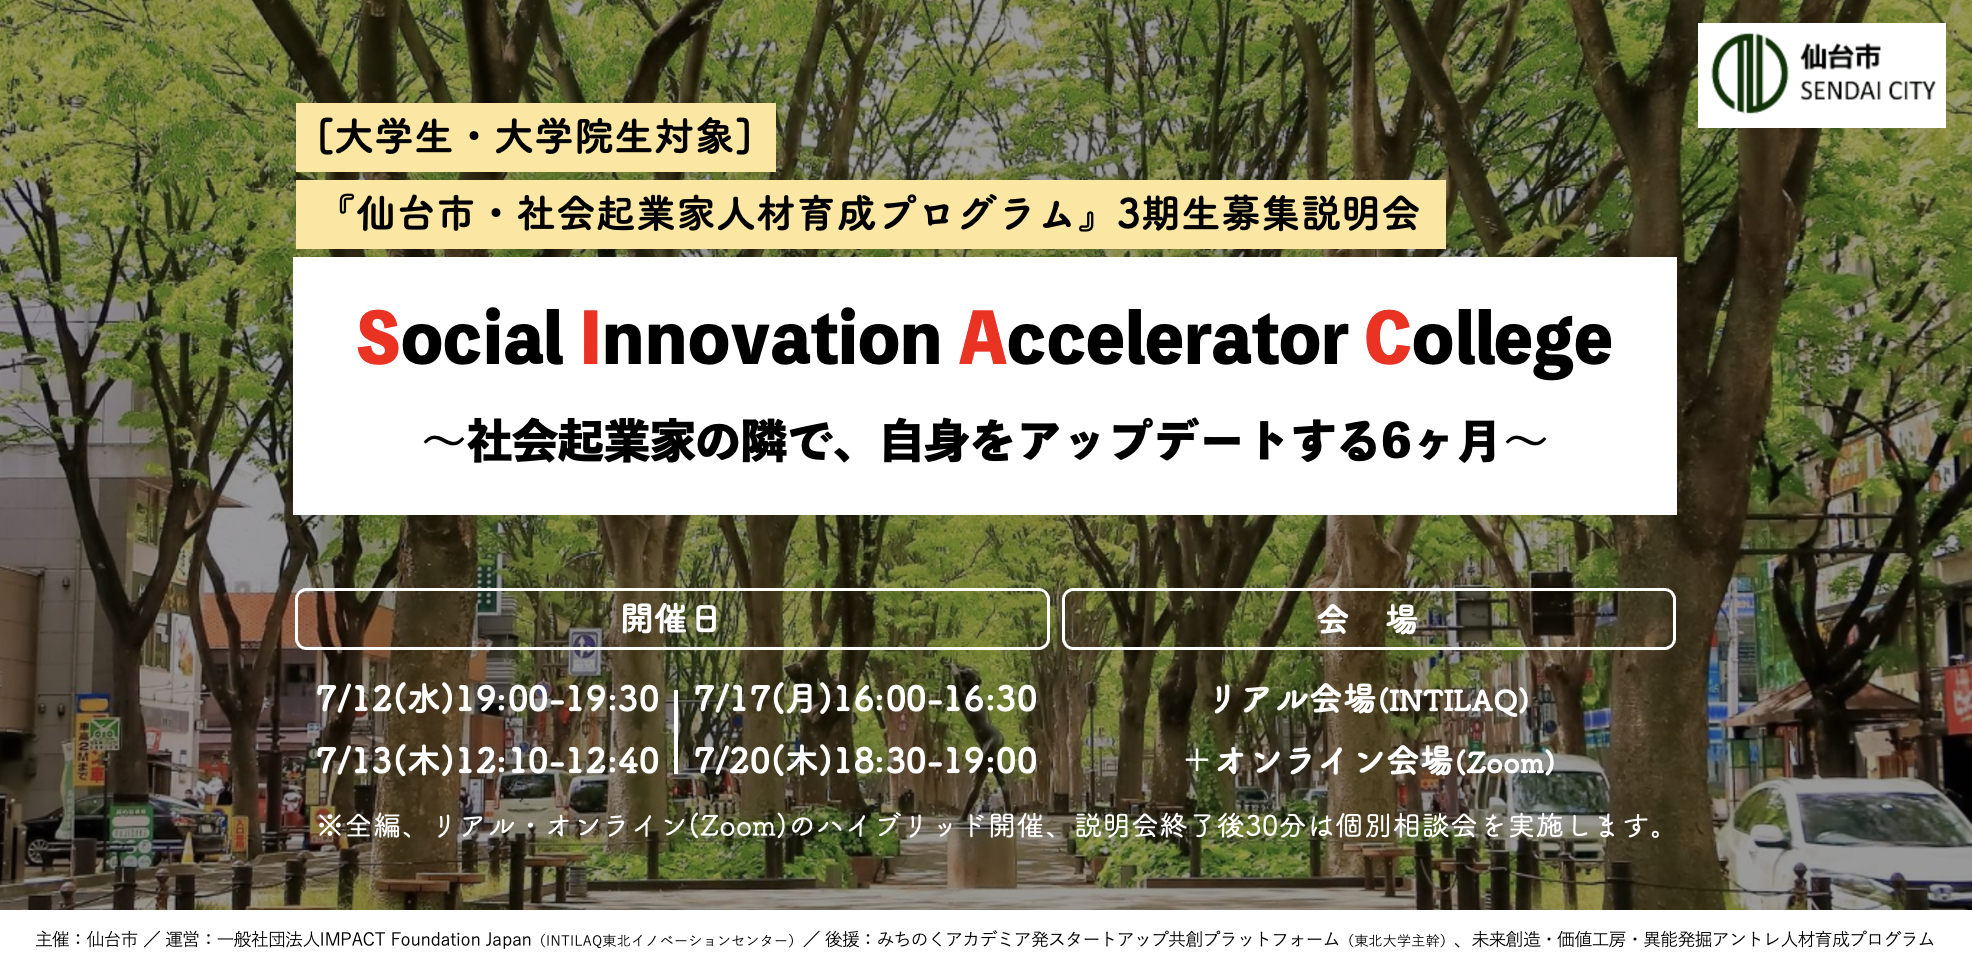 仙台市・大学生社会起業家人材育成プログラム「Social Innovation Accelerator College」募集説明会